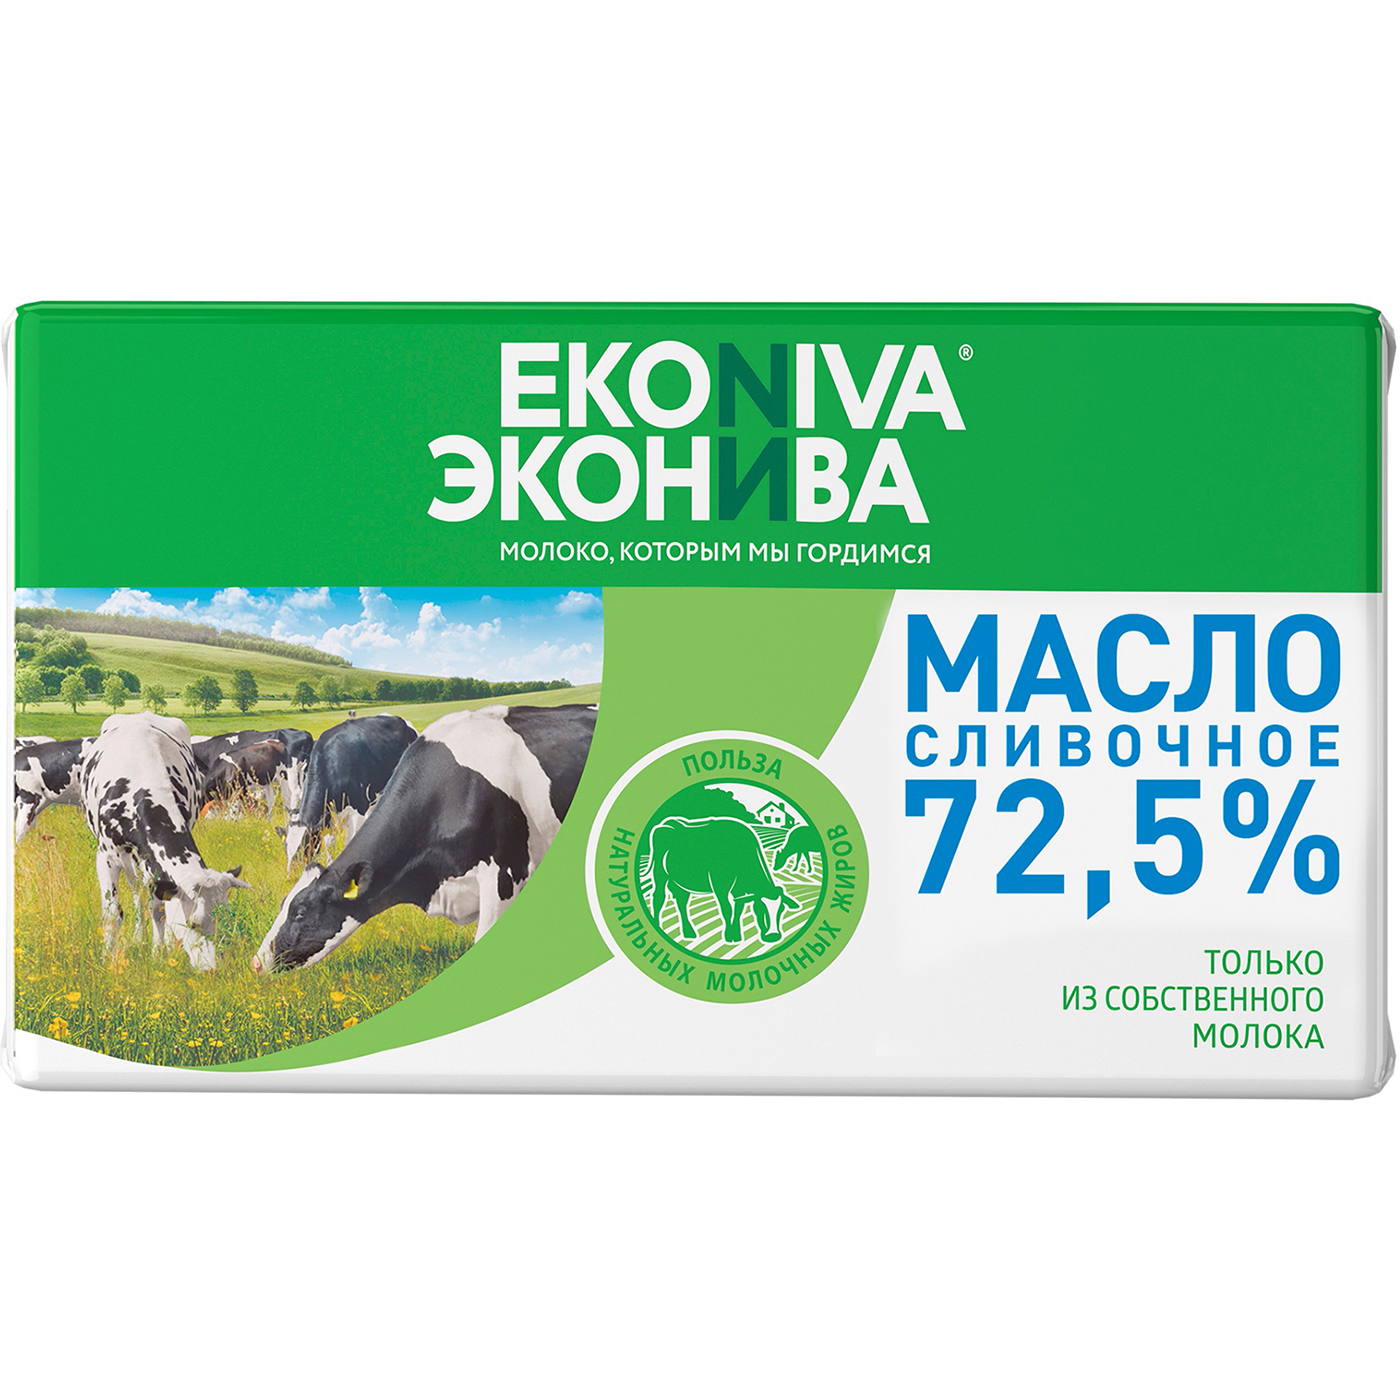 Масло сливочное Эконива 72,5% 350 г